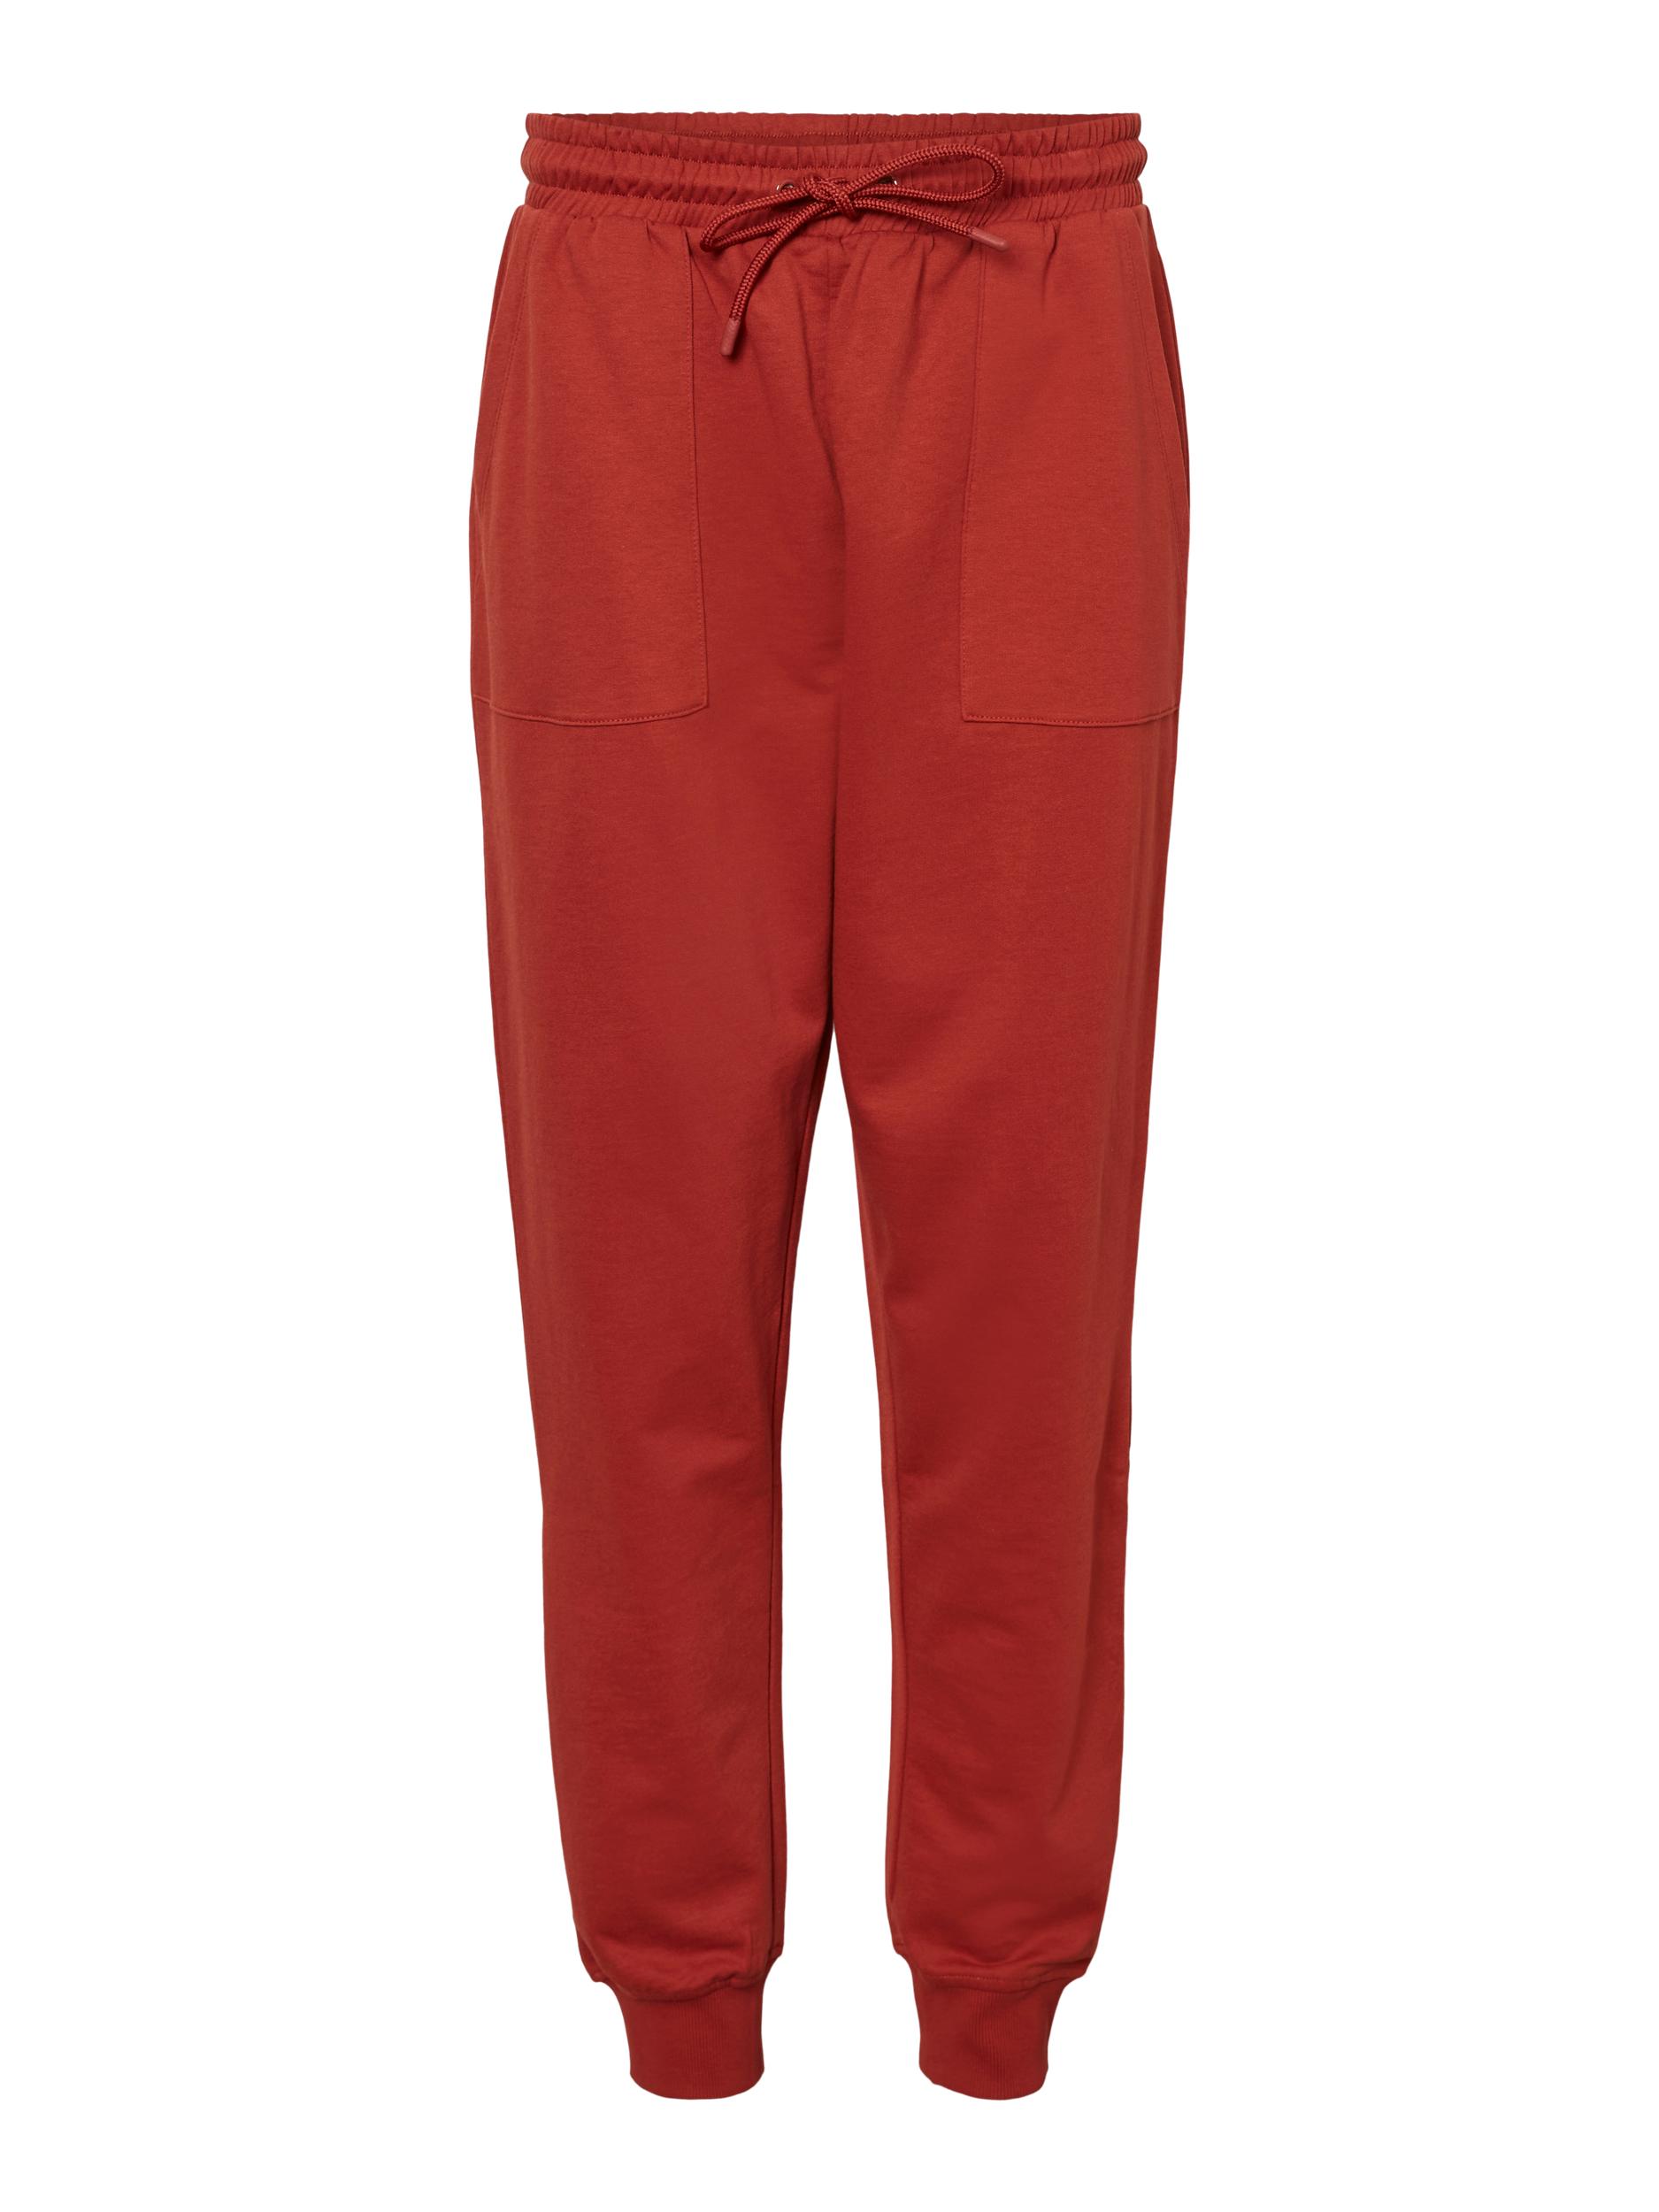 Odzież Spodnie VERO MODA Spodnie Lenka w kolorze Nakrapiany Czerwonym 